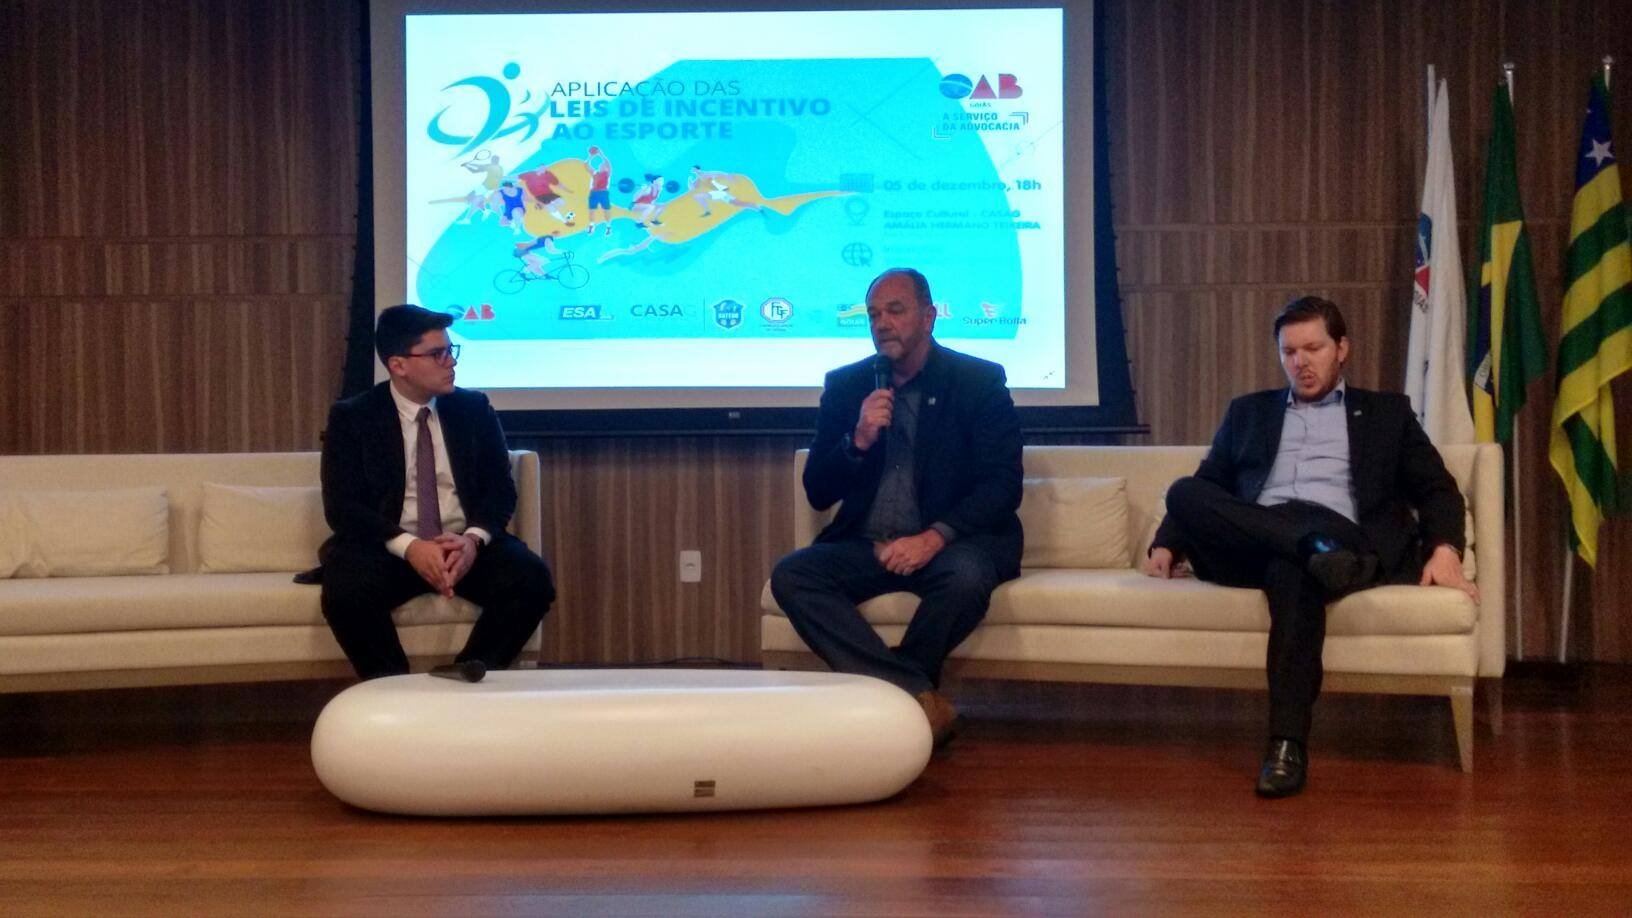 Superintendentes da Seel participam de roda de conversa sobre leis de incentivo, em evento da OAB Goiás